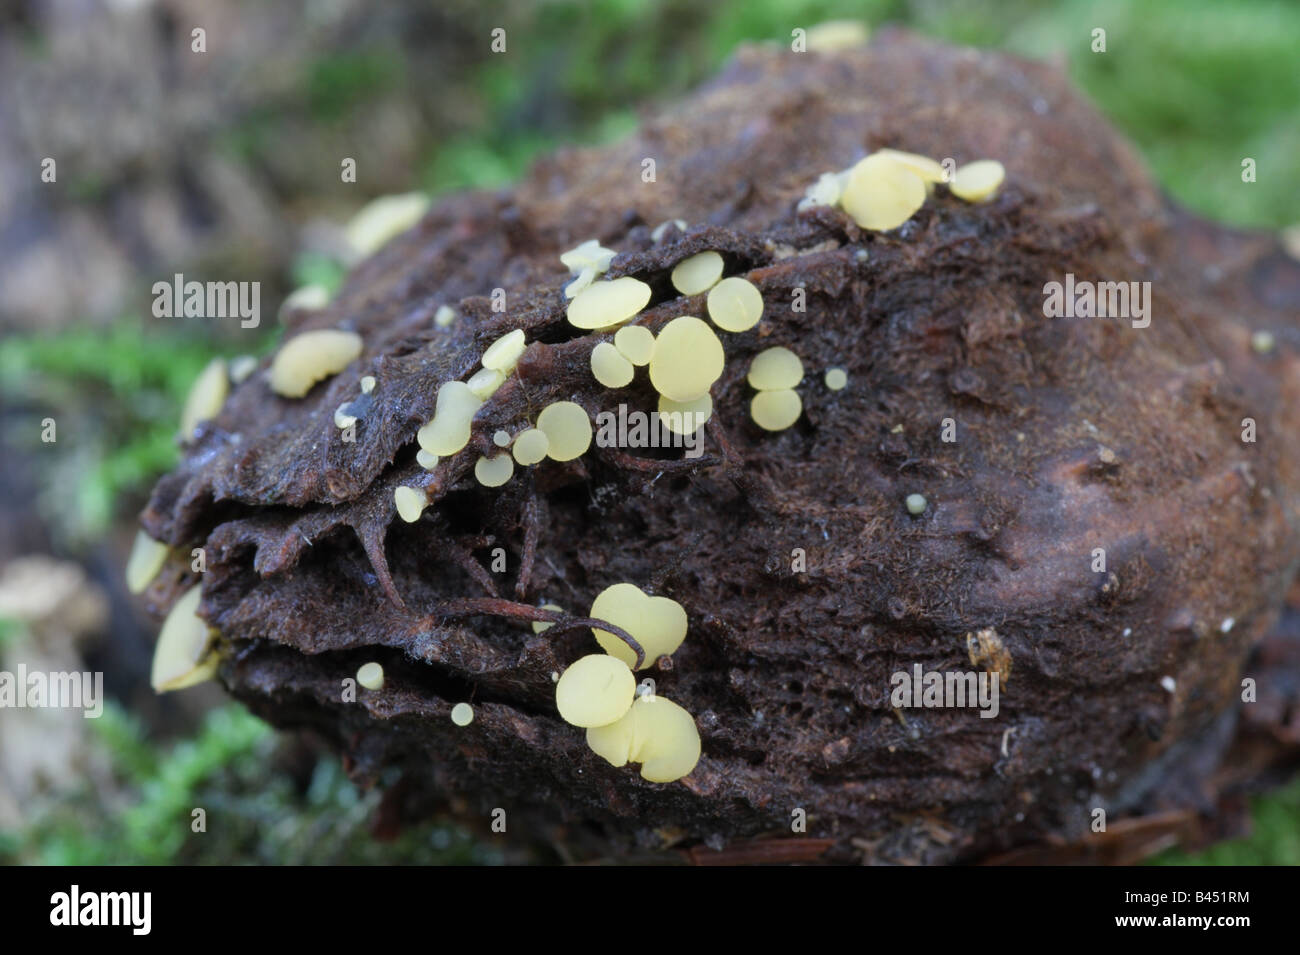 Phaeohelotium umbilicatum Stock Photo